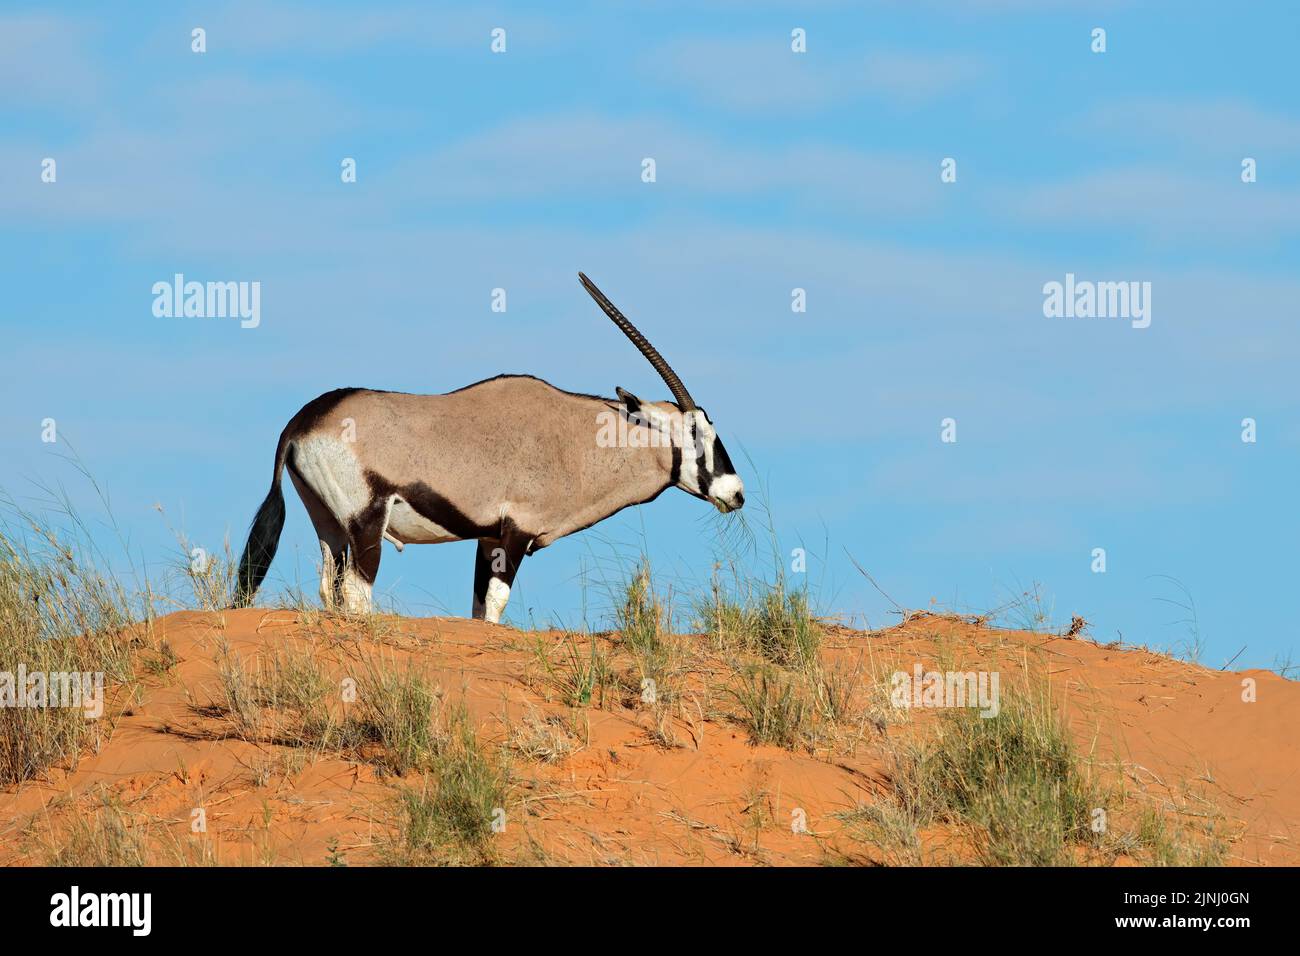 Antilope de gemsbok (Oryx gazella) sur une dune de sable rouge, désert de Kalahari, Afrique du Sud Banque D'Images